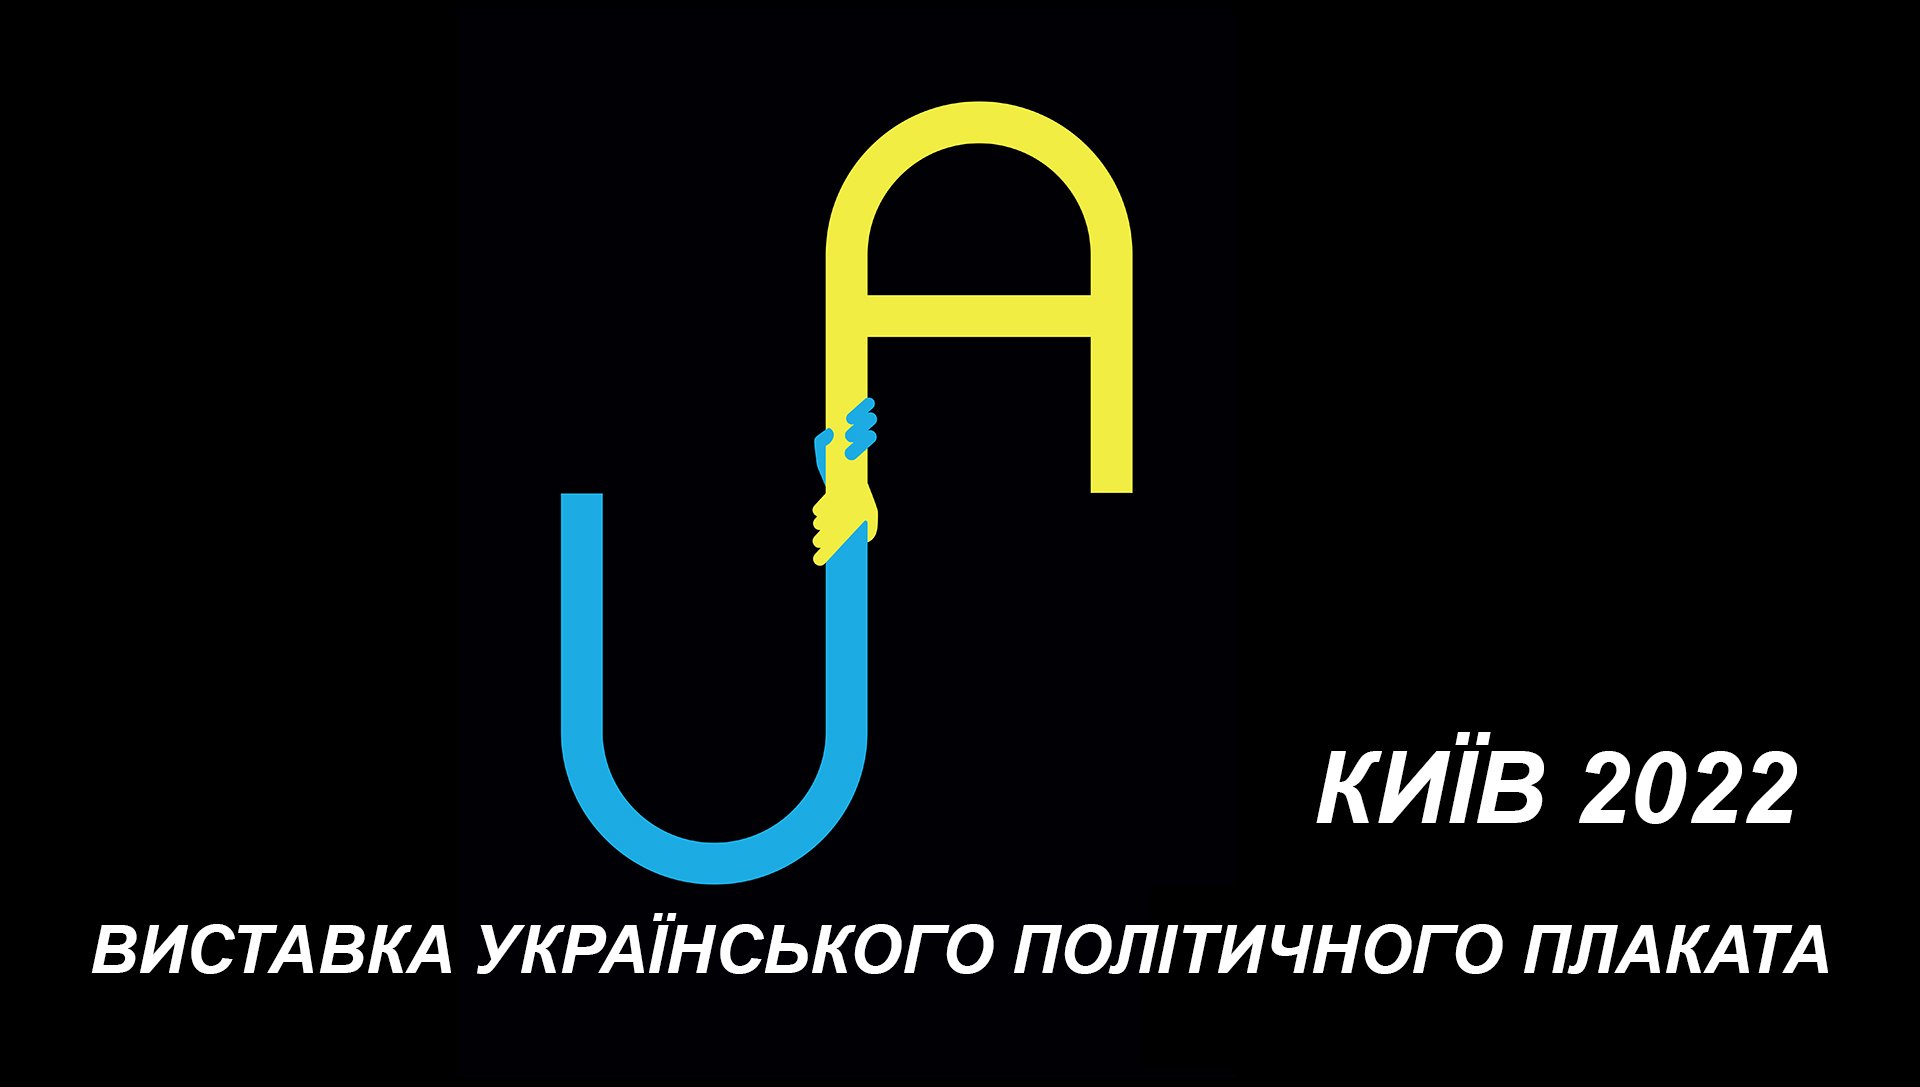 Выставка "Украина превыше всего"